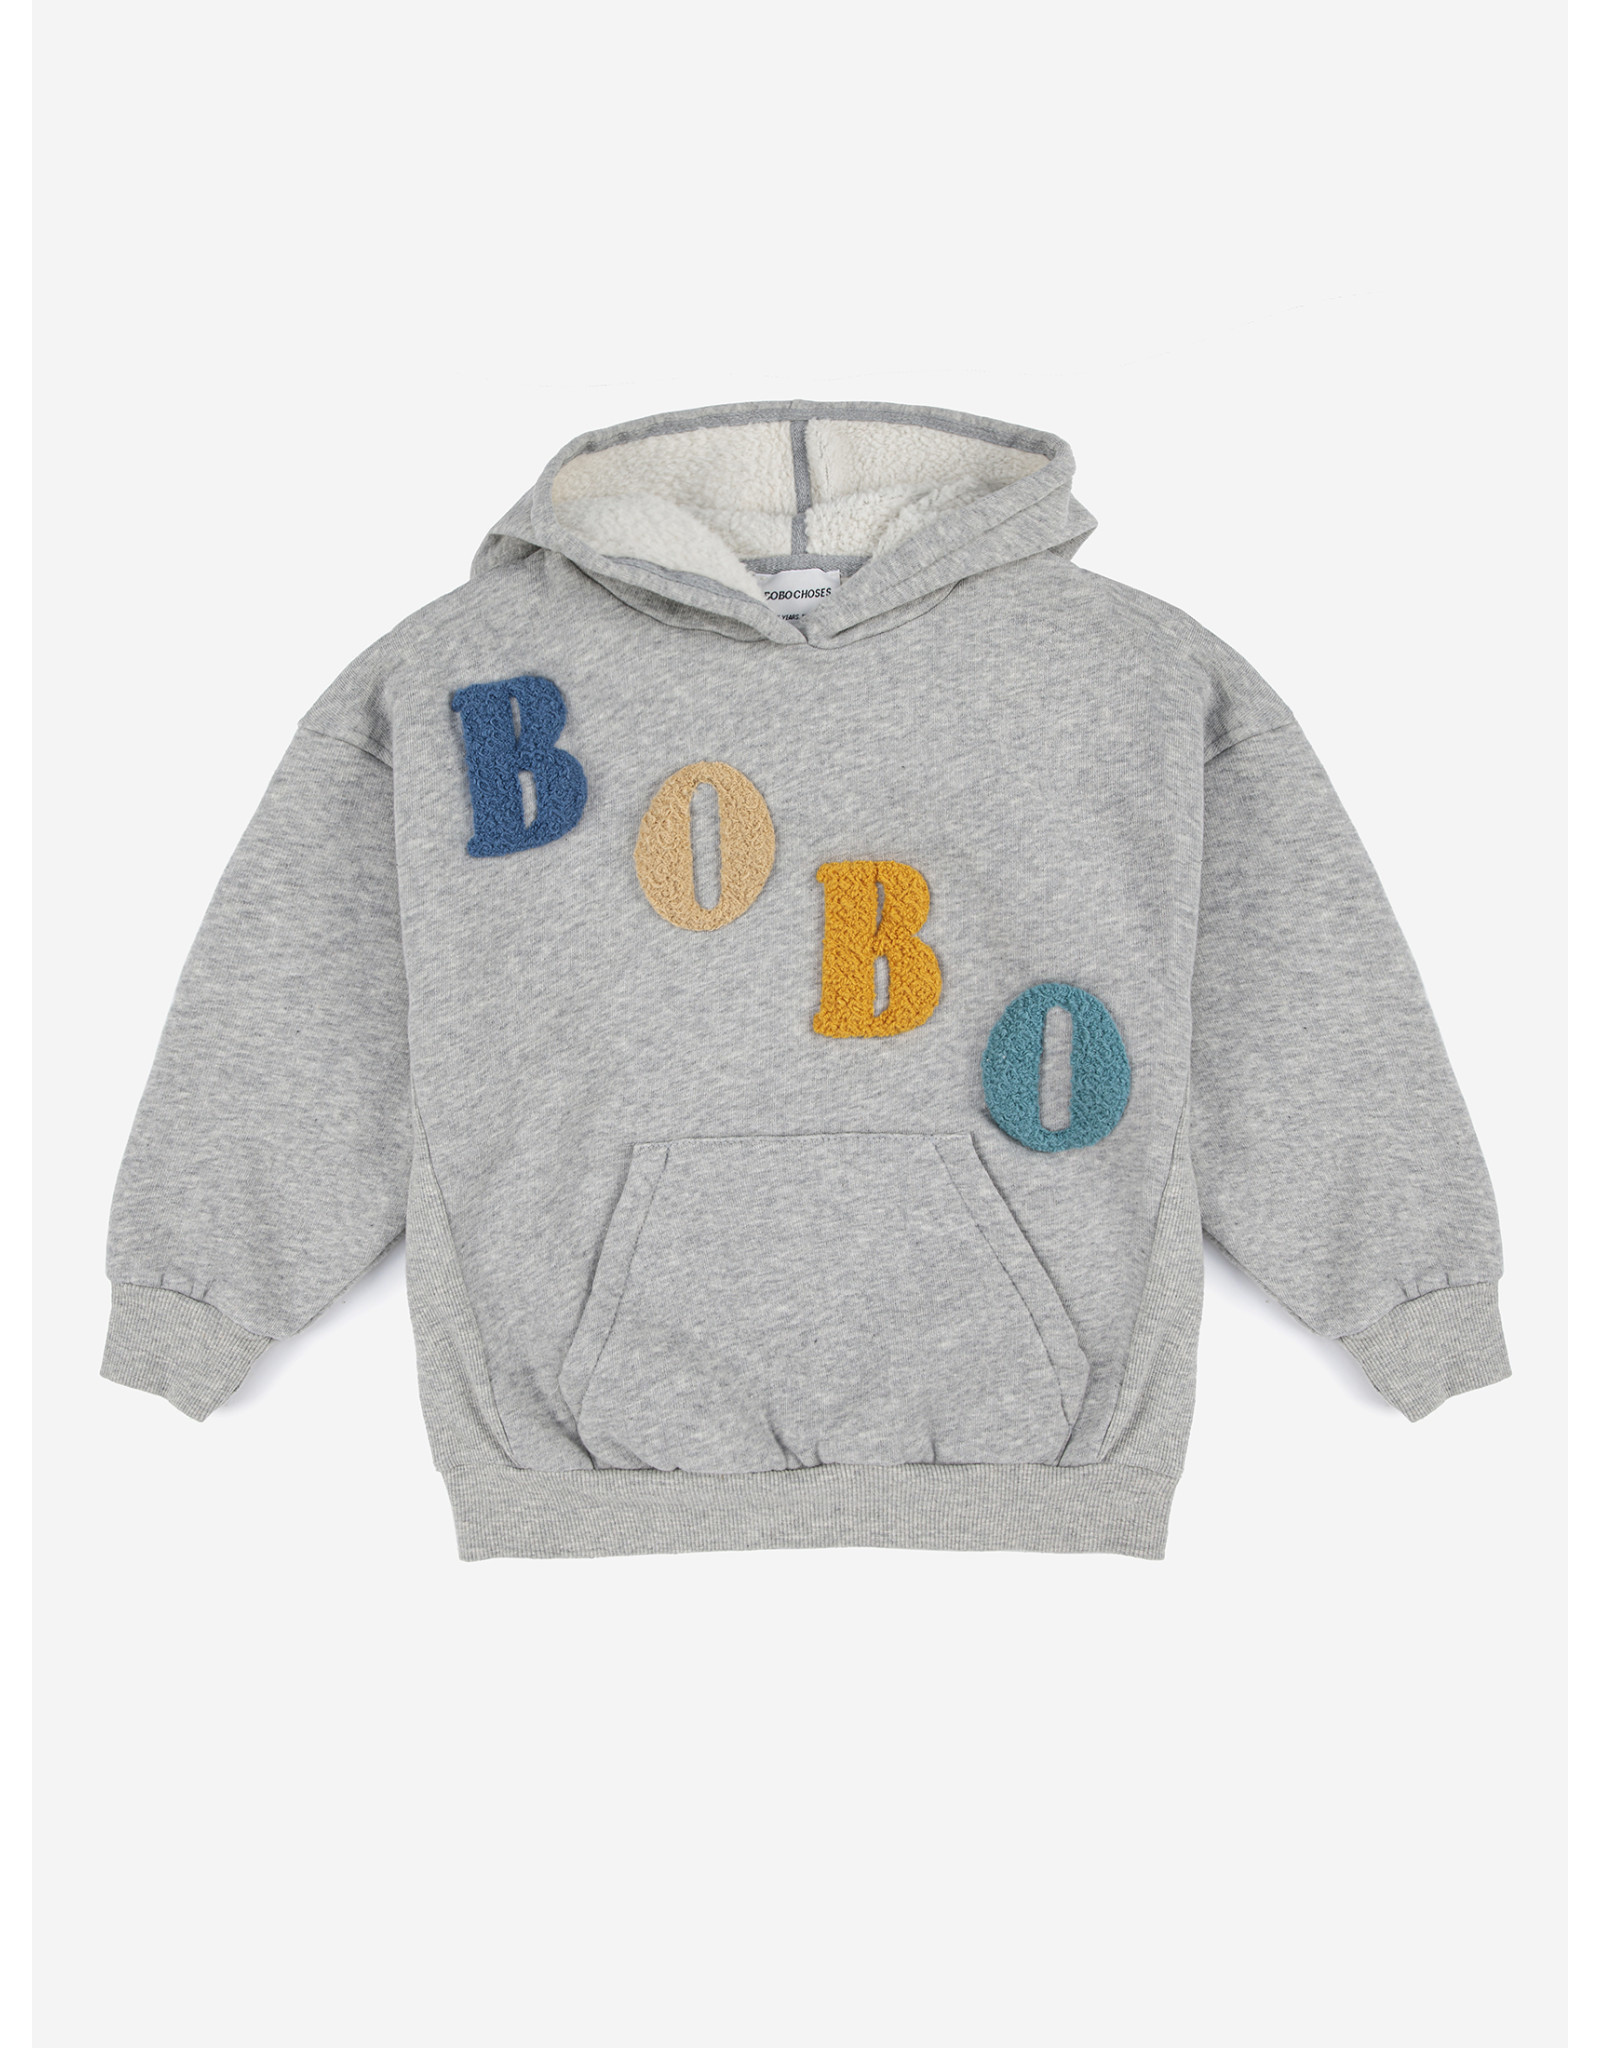 Bobo Choses Bobo Choses - Bobo Diagonal Hooded Sweats